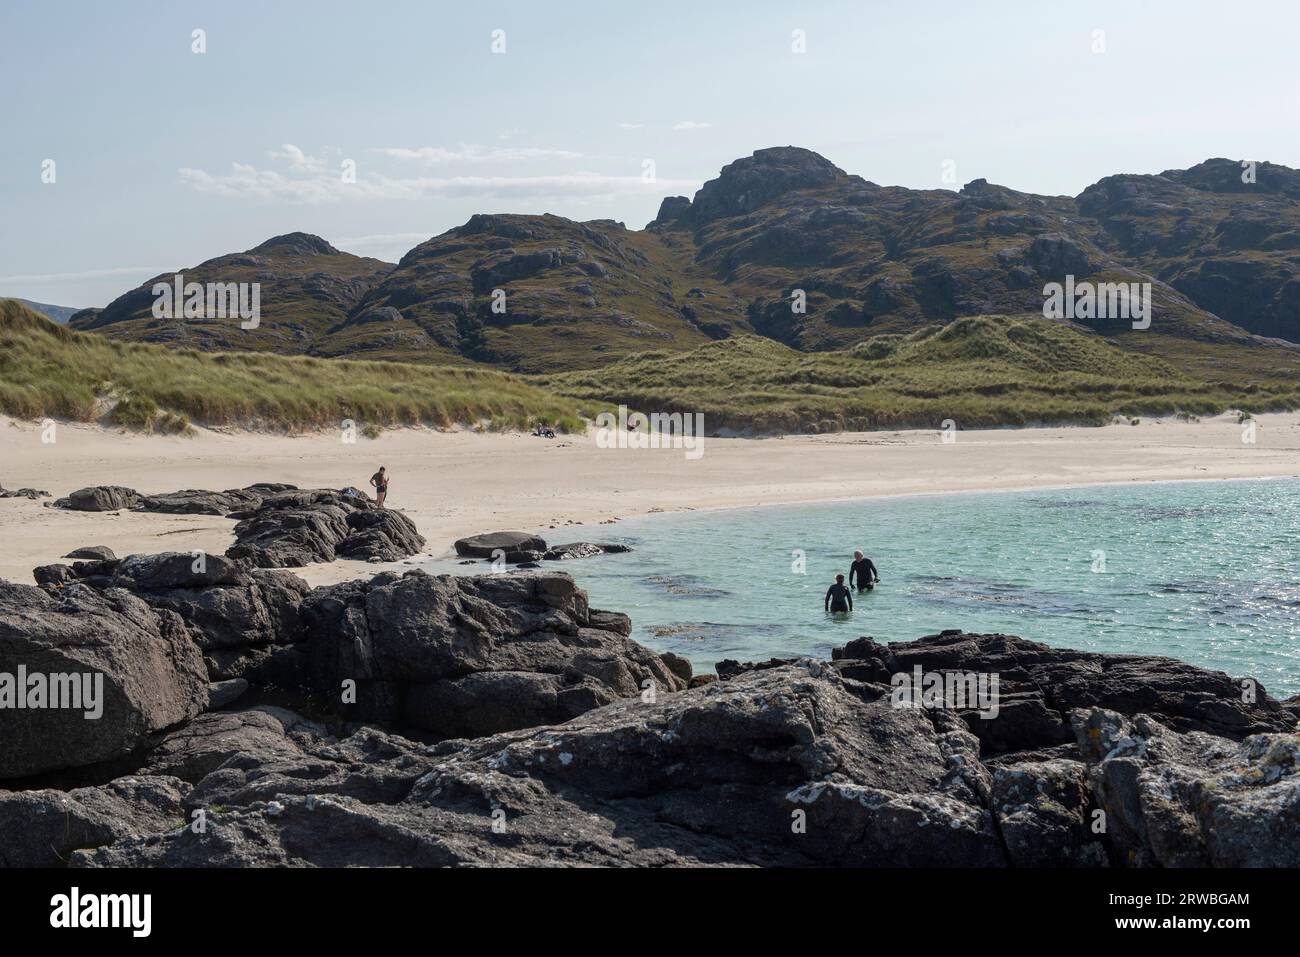 Les plages de sable blanc et les eaux turquoises de la baie de Sanna, péninsule d'Ardnamurchan, Écosse, Royaume-Uni Banque D'Images